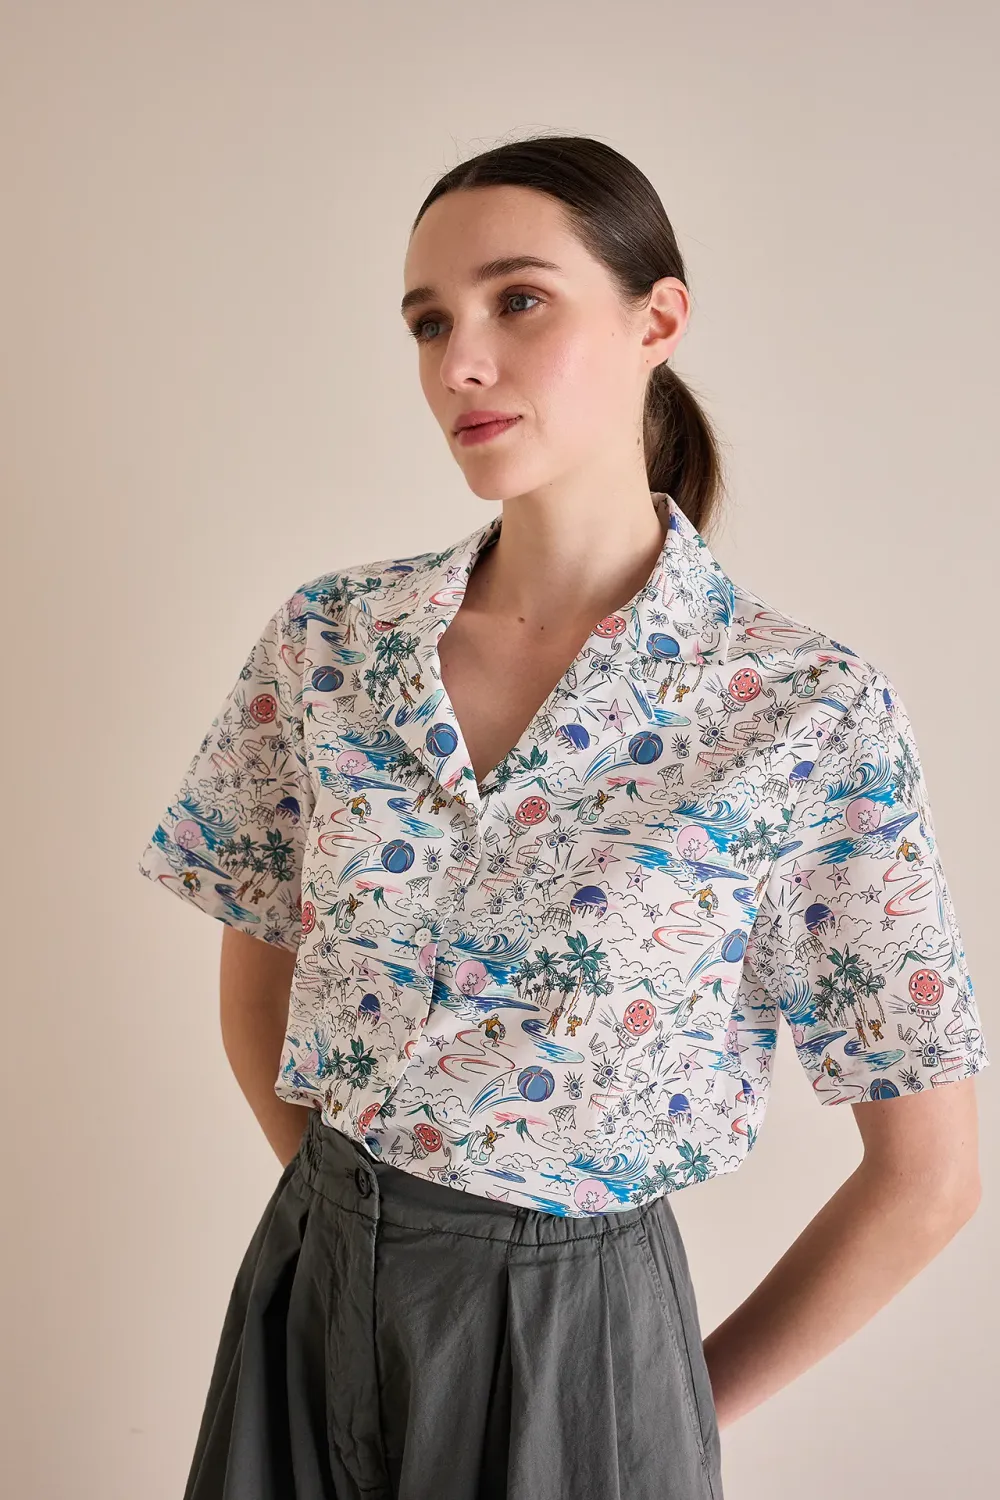 Bowling collar shirt – Made with Liberty Fabrics